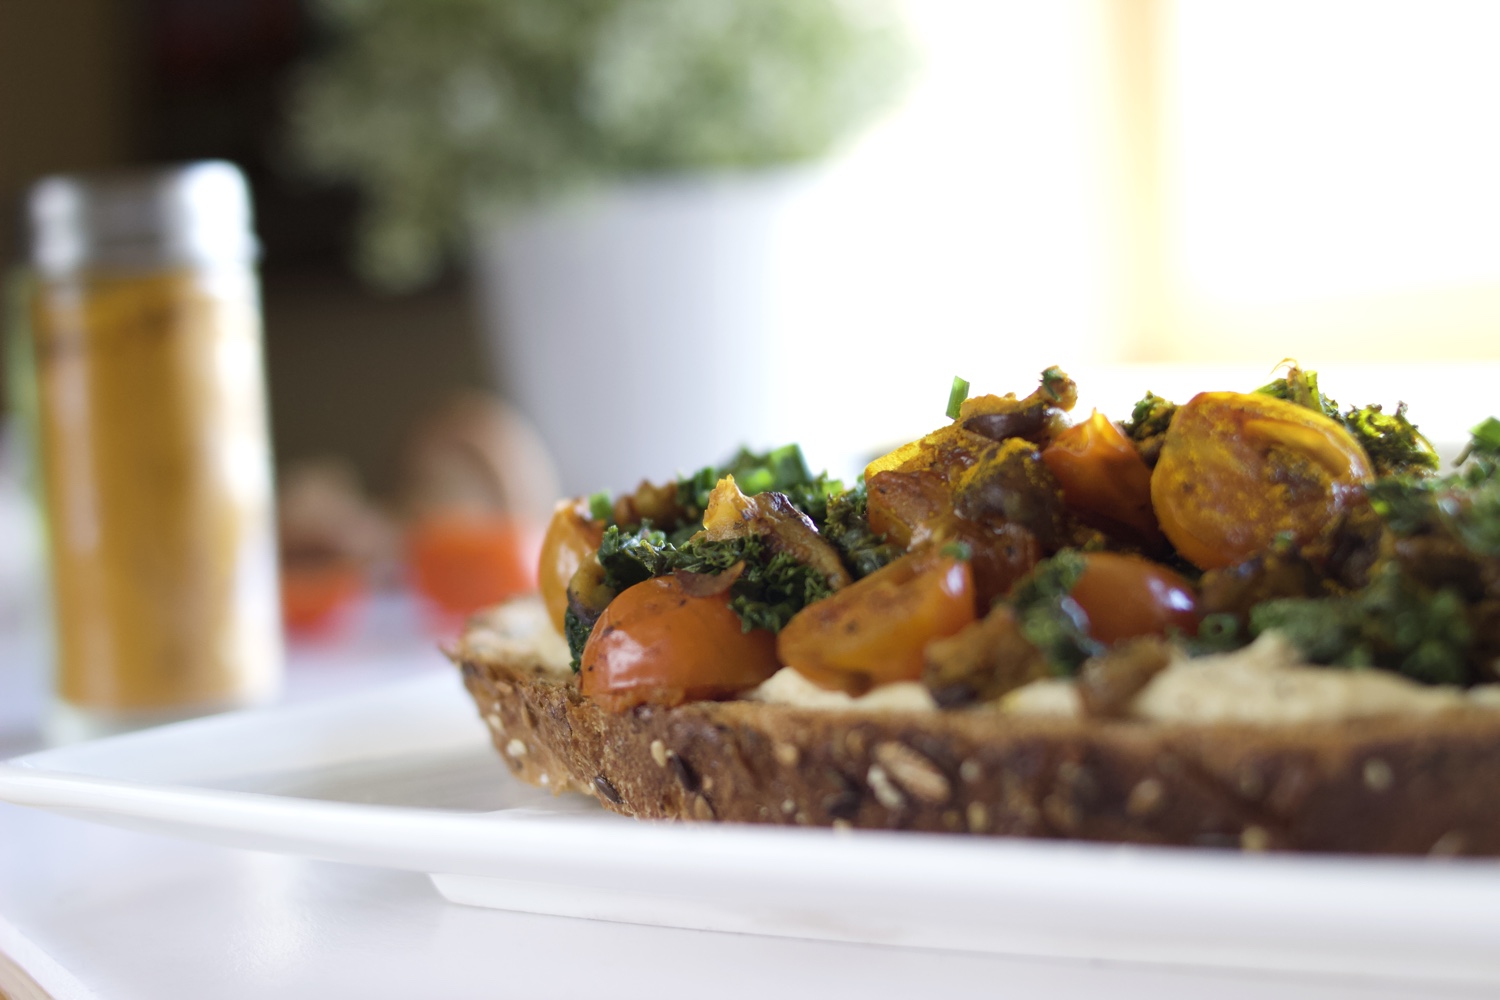 Simple vegan meal ideas: Hummus, kale, shiitake and turmeric toast | Brownble